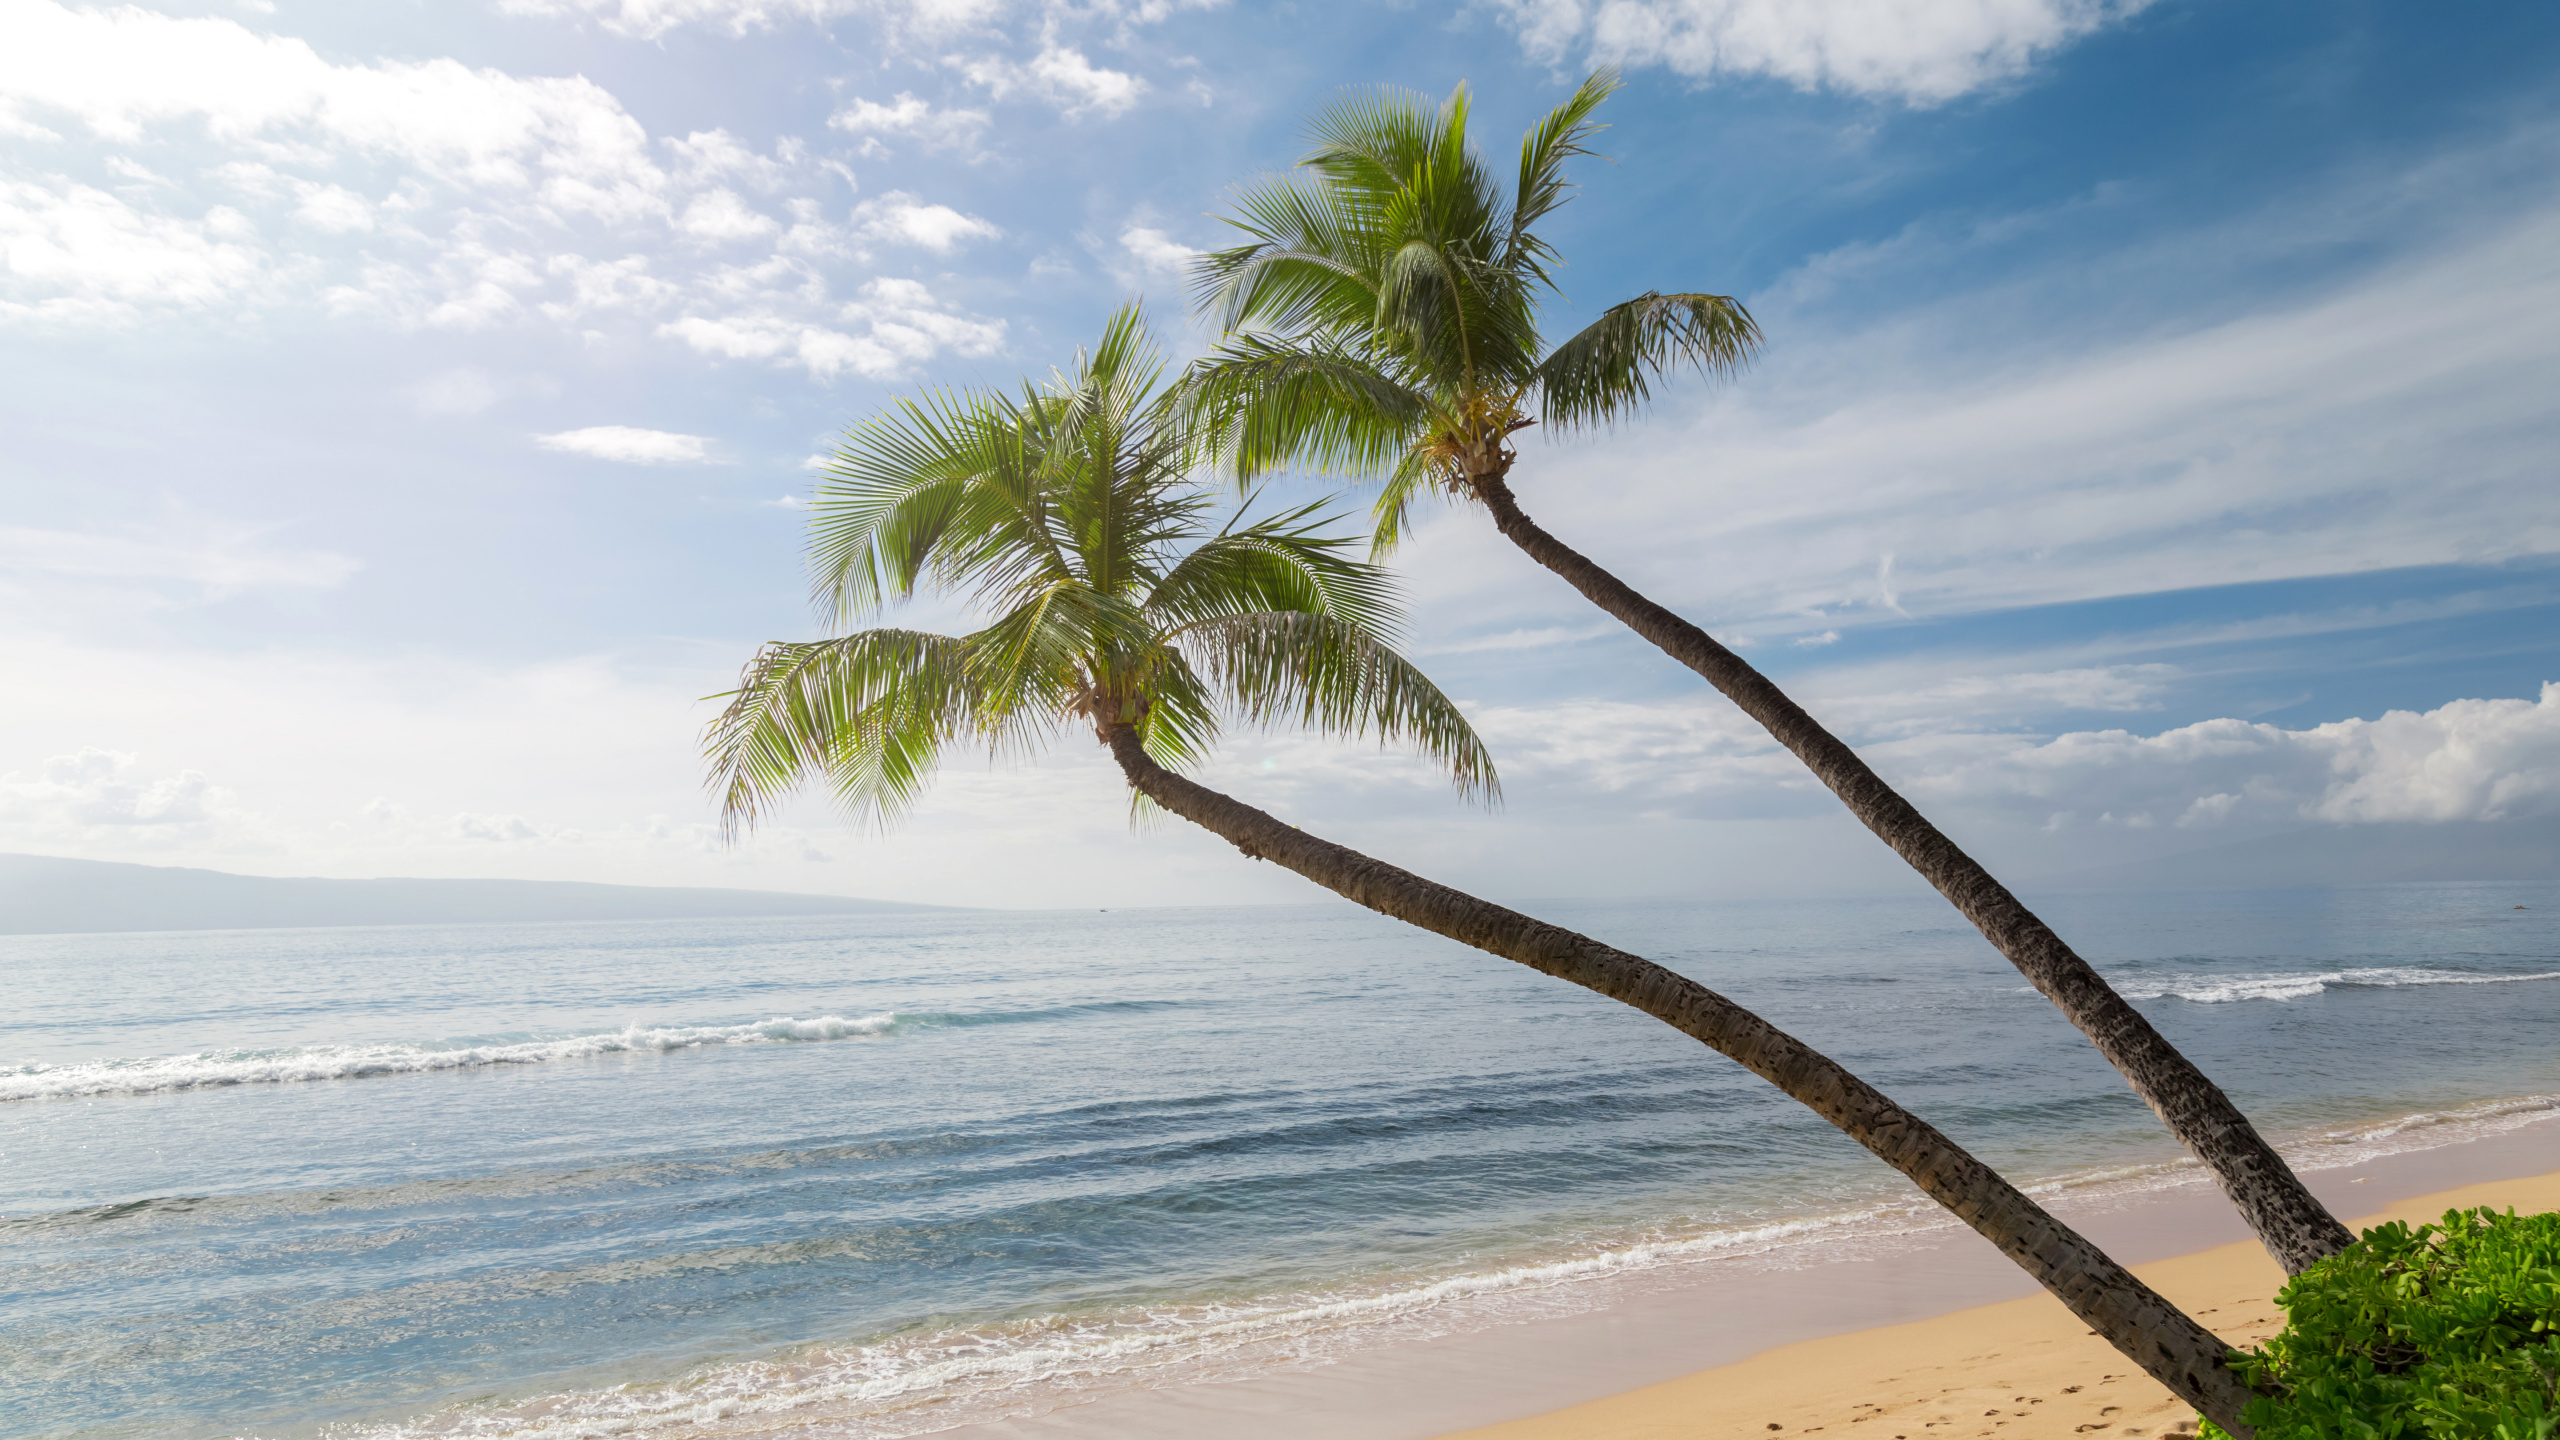 棕榈树, 夏威夷, 海岸, 海洋, 性质 壁纸 2560x1440 允许